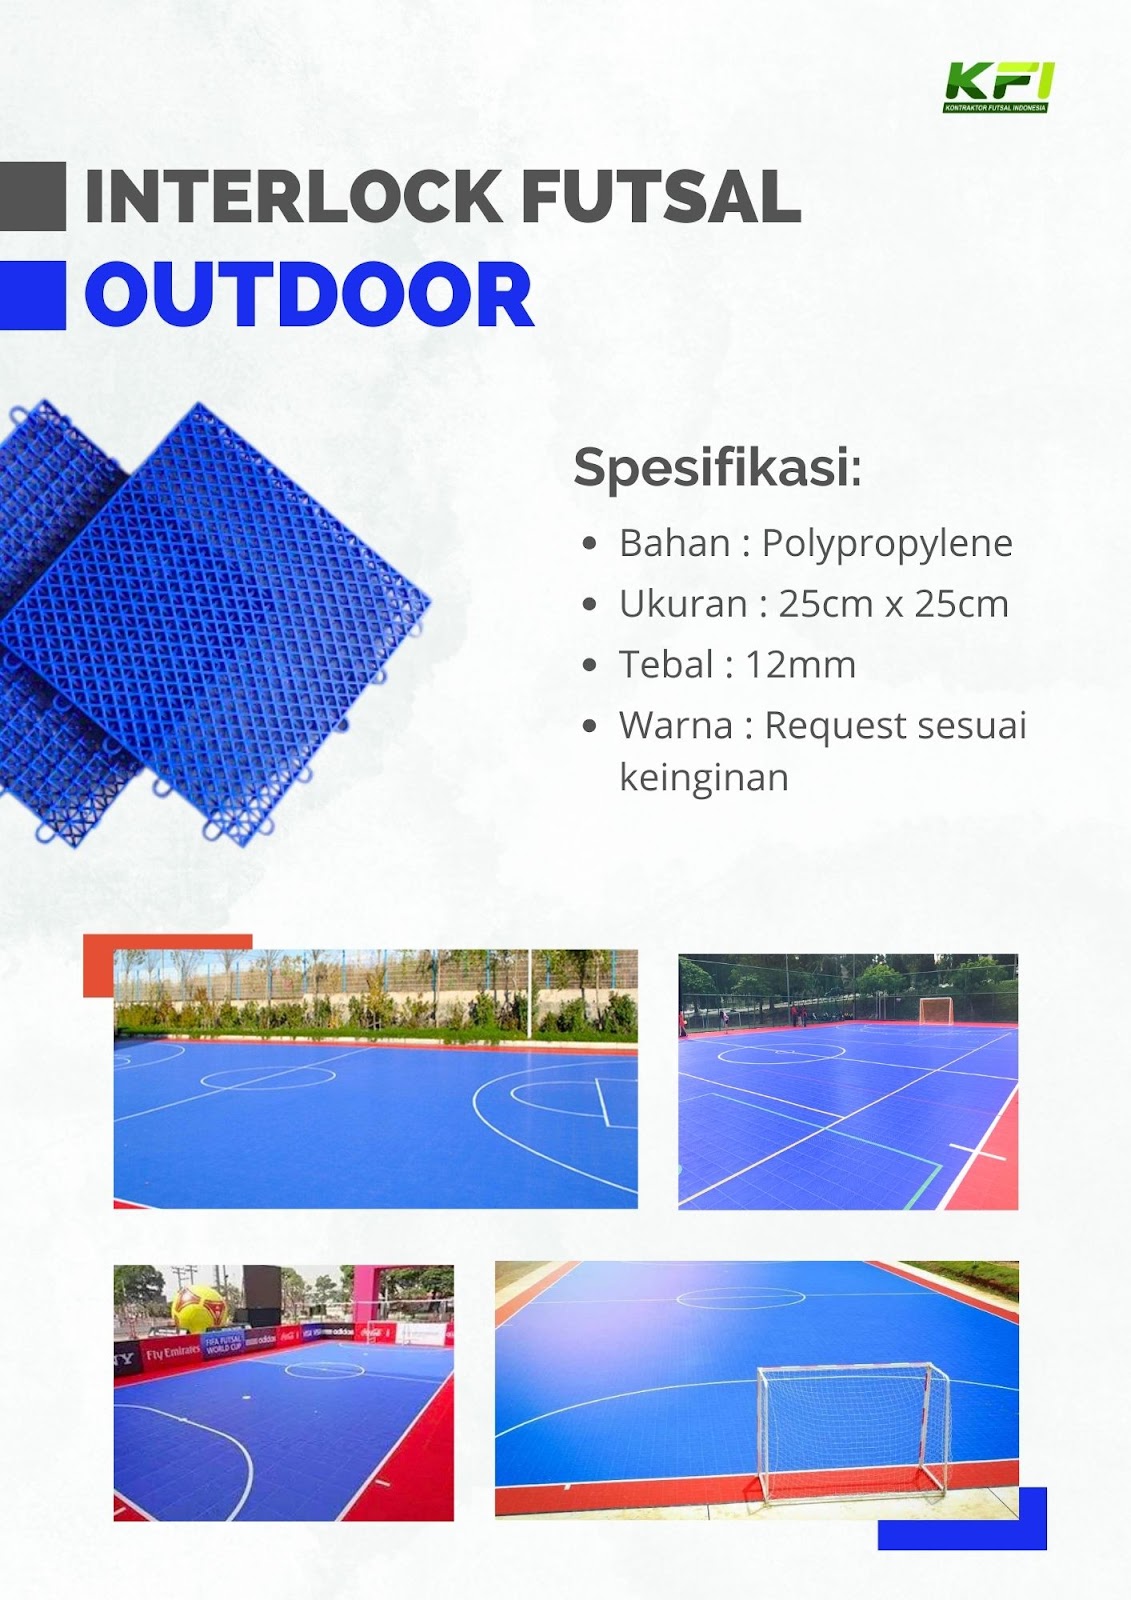 Interlock Futsal Outdoor